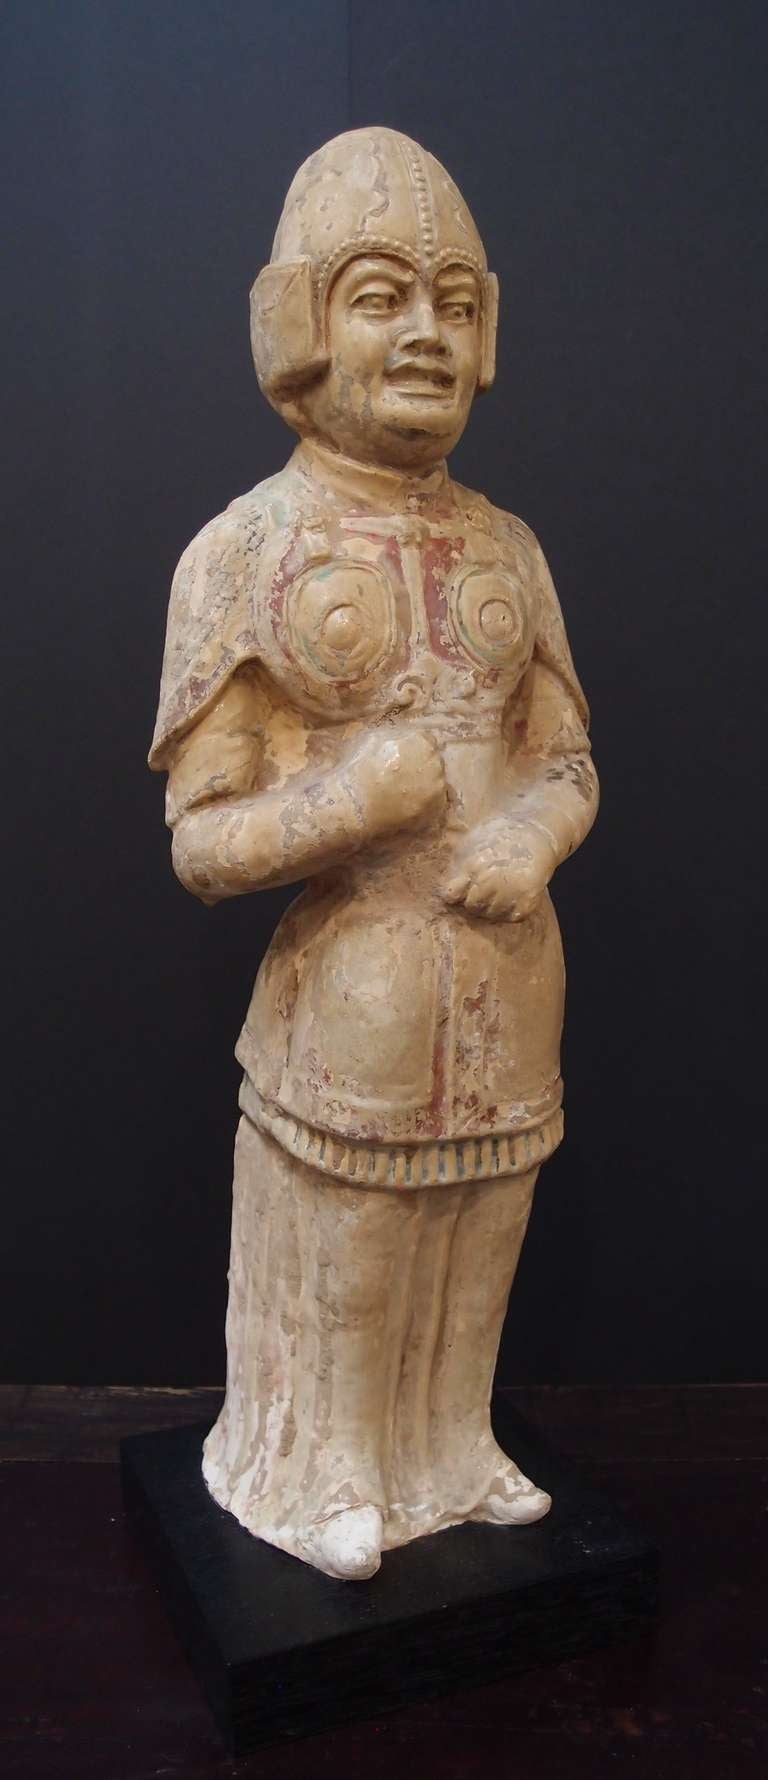 Un très rare modèle de guerrier en poterie peinte et vernie de la dynastie Sui.
Ce guerrier est représenté debout, portant une armure près du corps sur une longue tunique, et il est coiffé d'un couvre-chef clouté et ajusté. Son visage est moulé